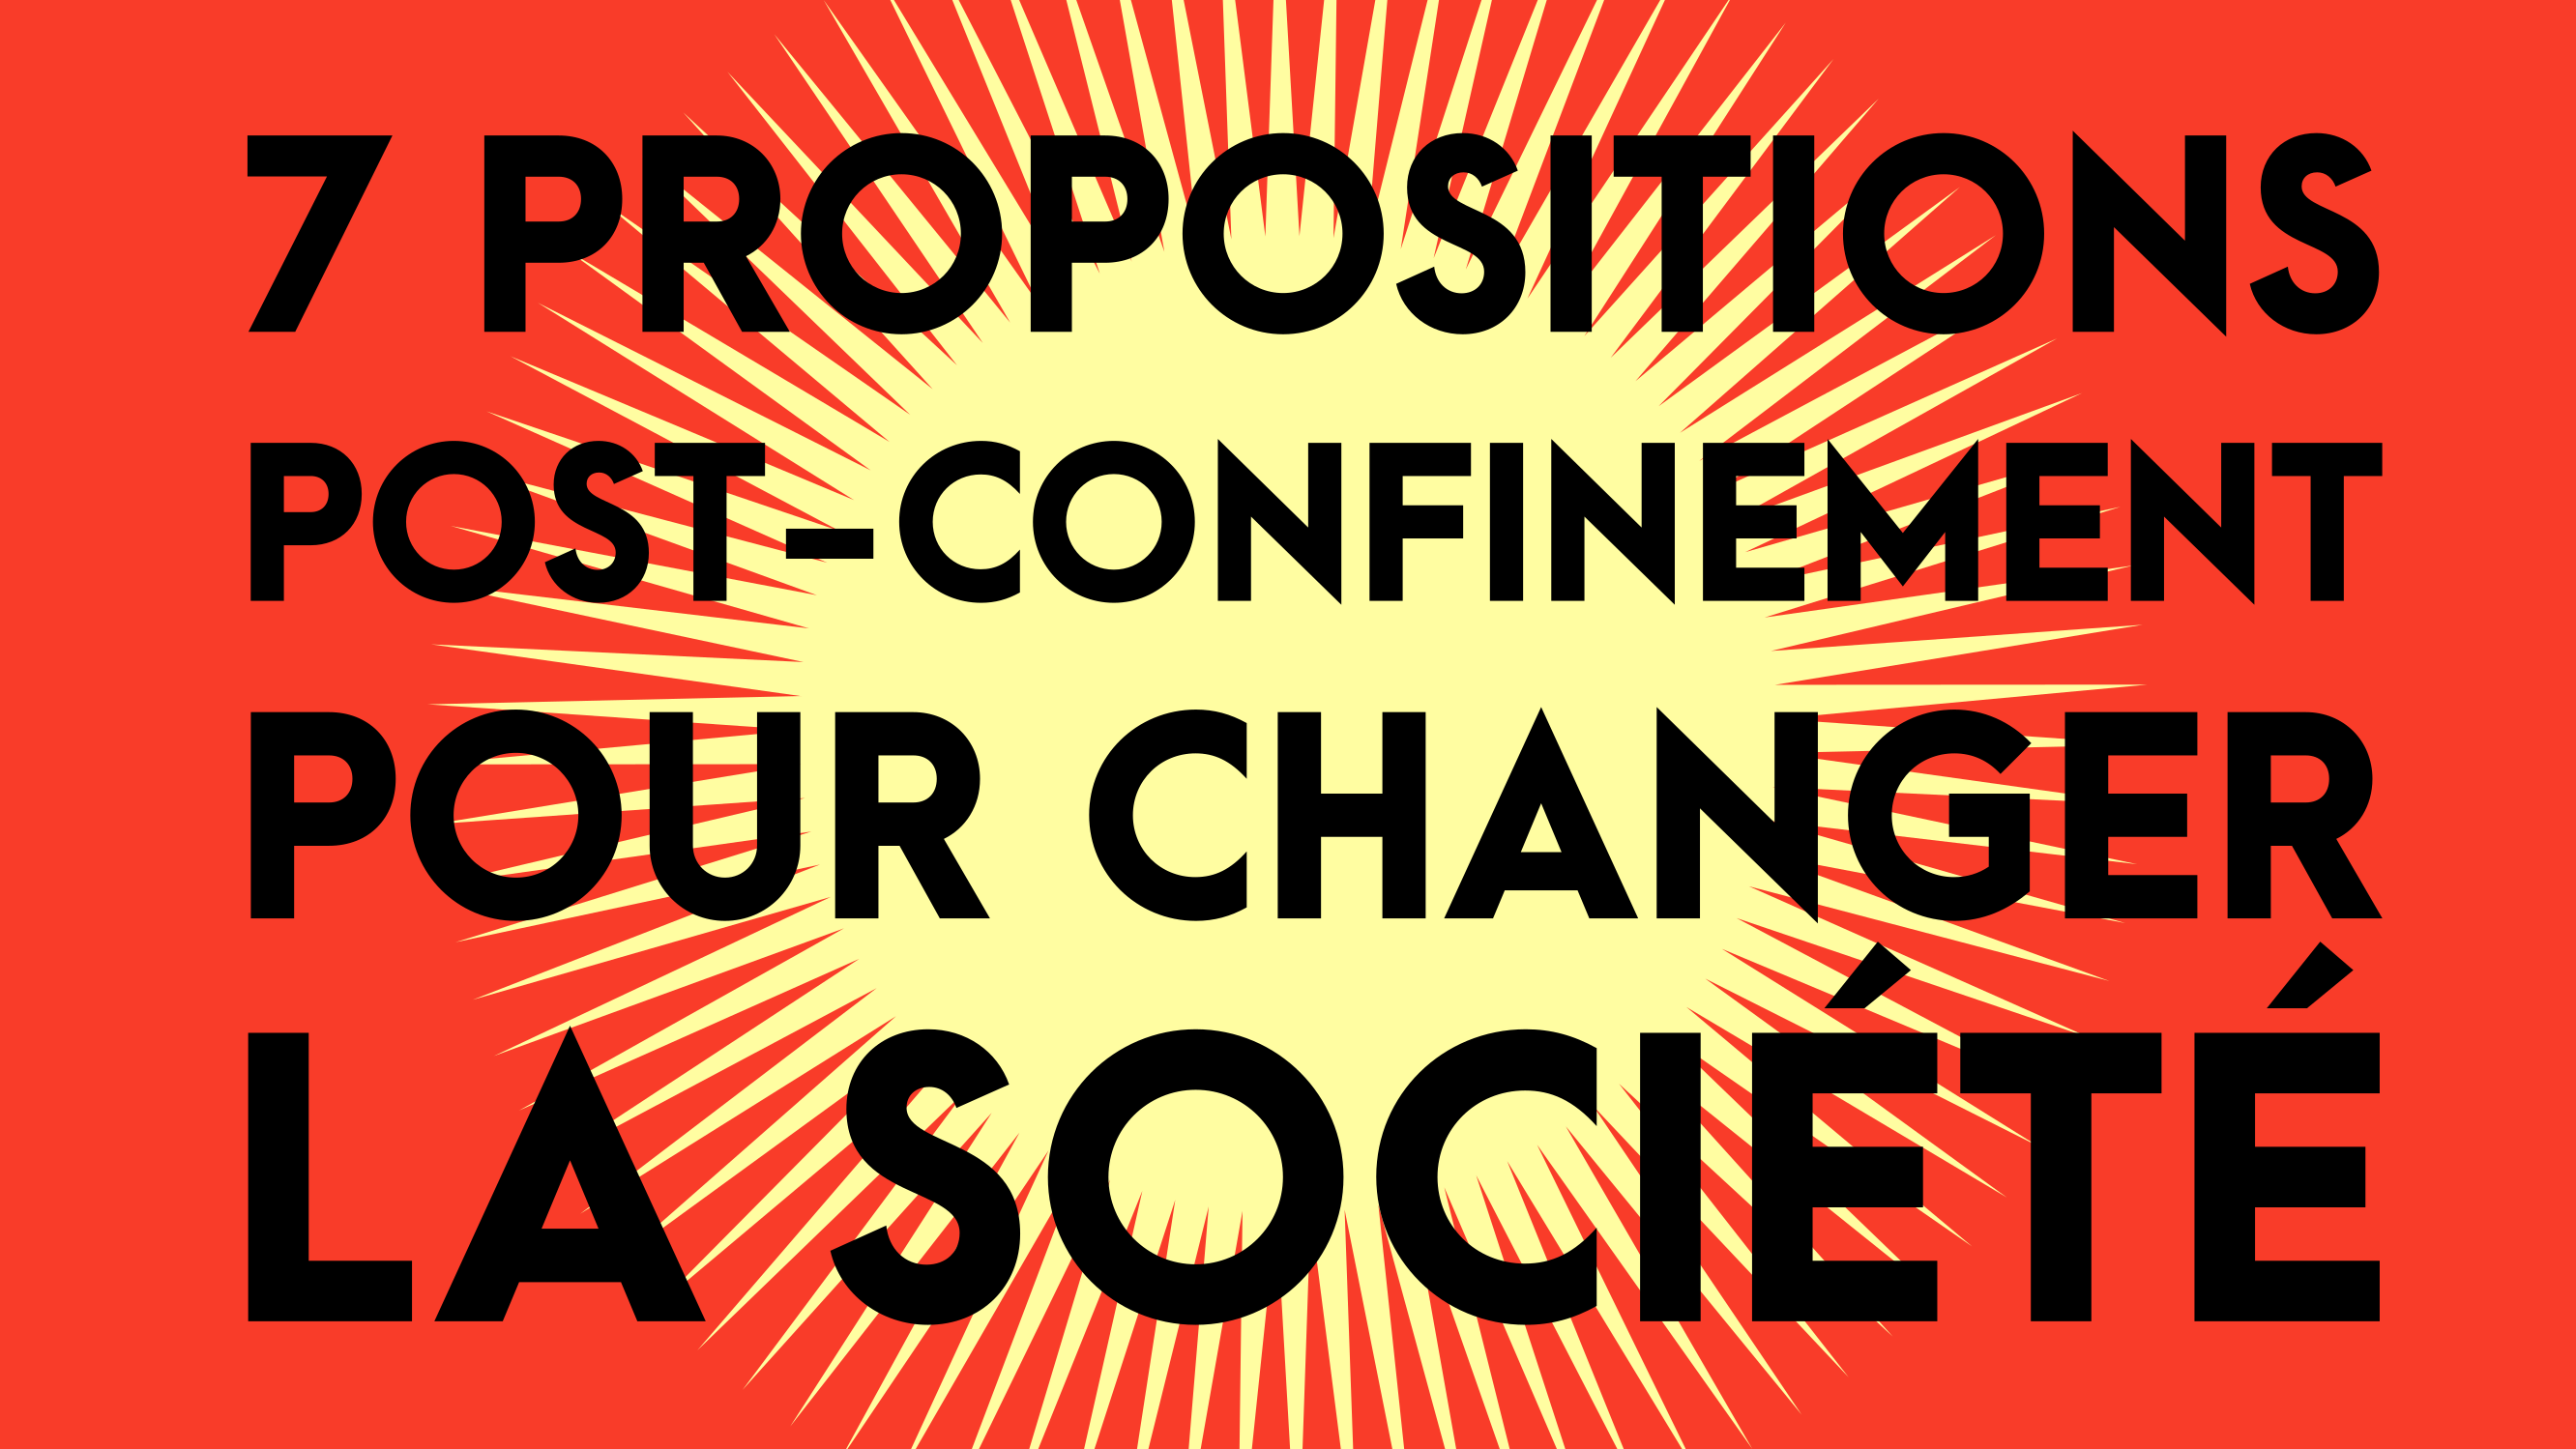 7 propositions post-confinement pour changer la société